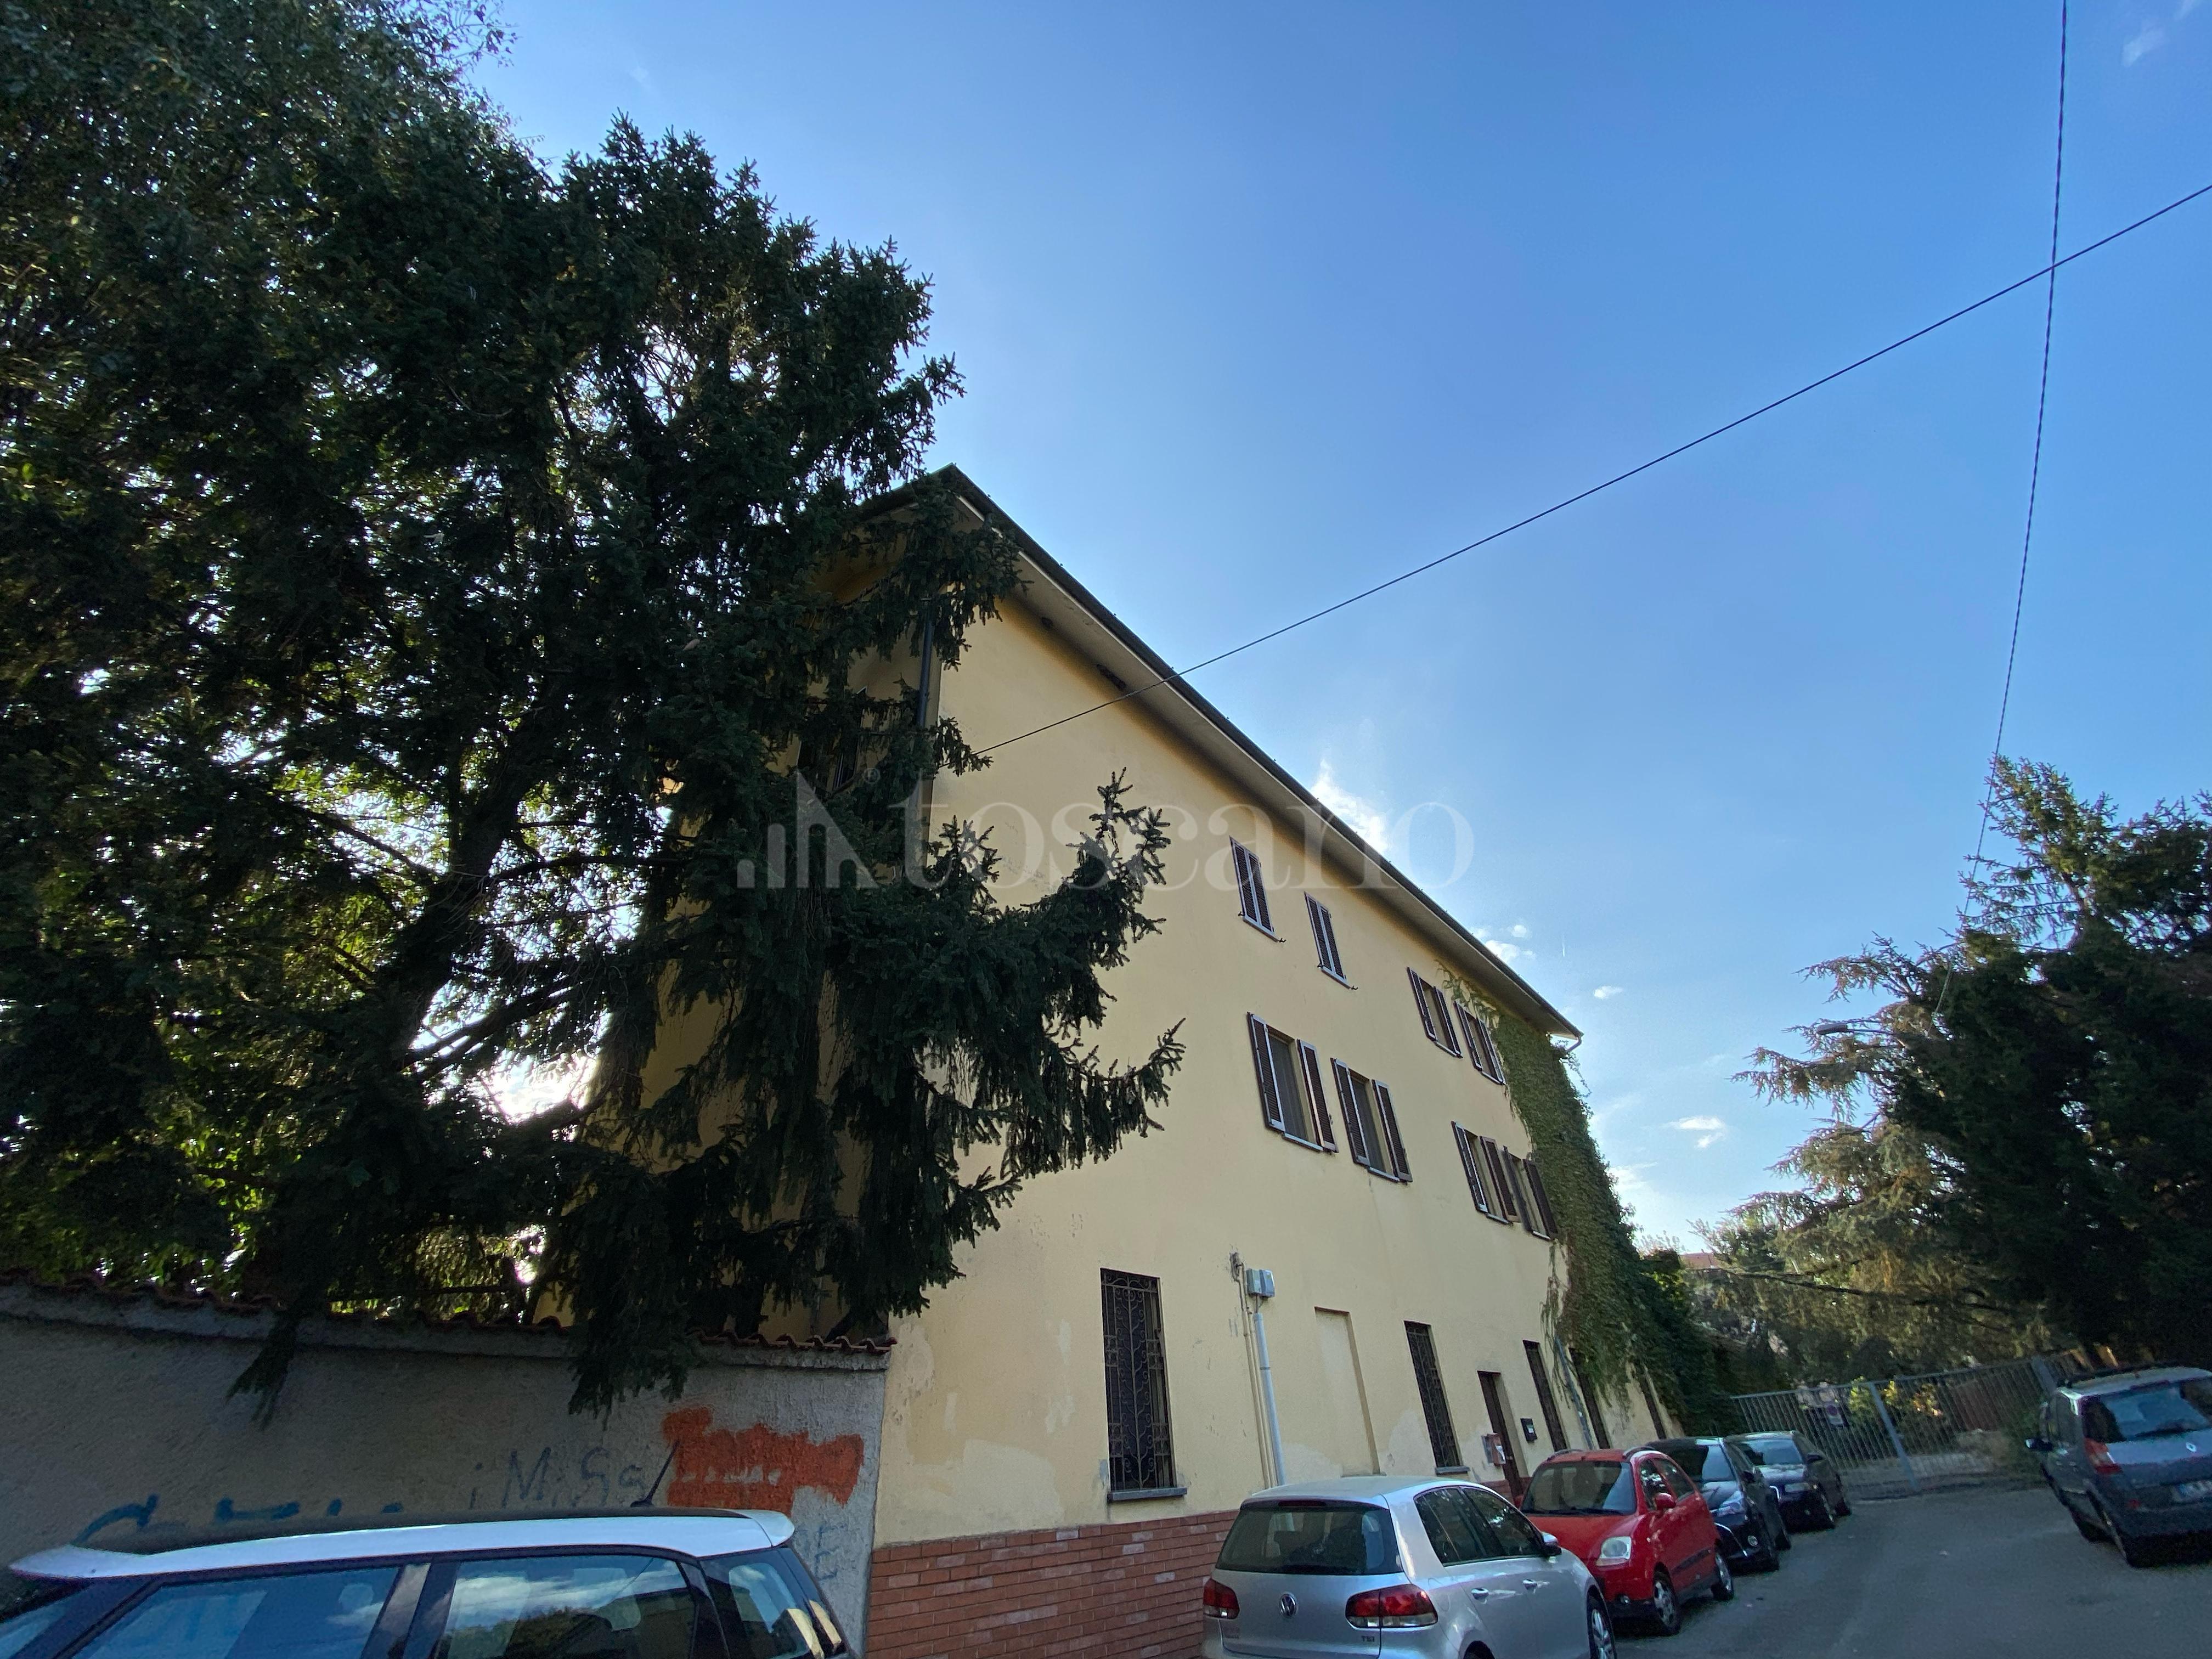 Casa a Monza in Via Paisiello, S. Rocco